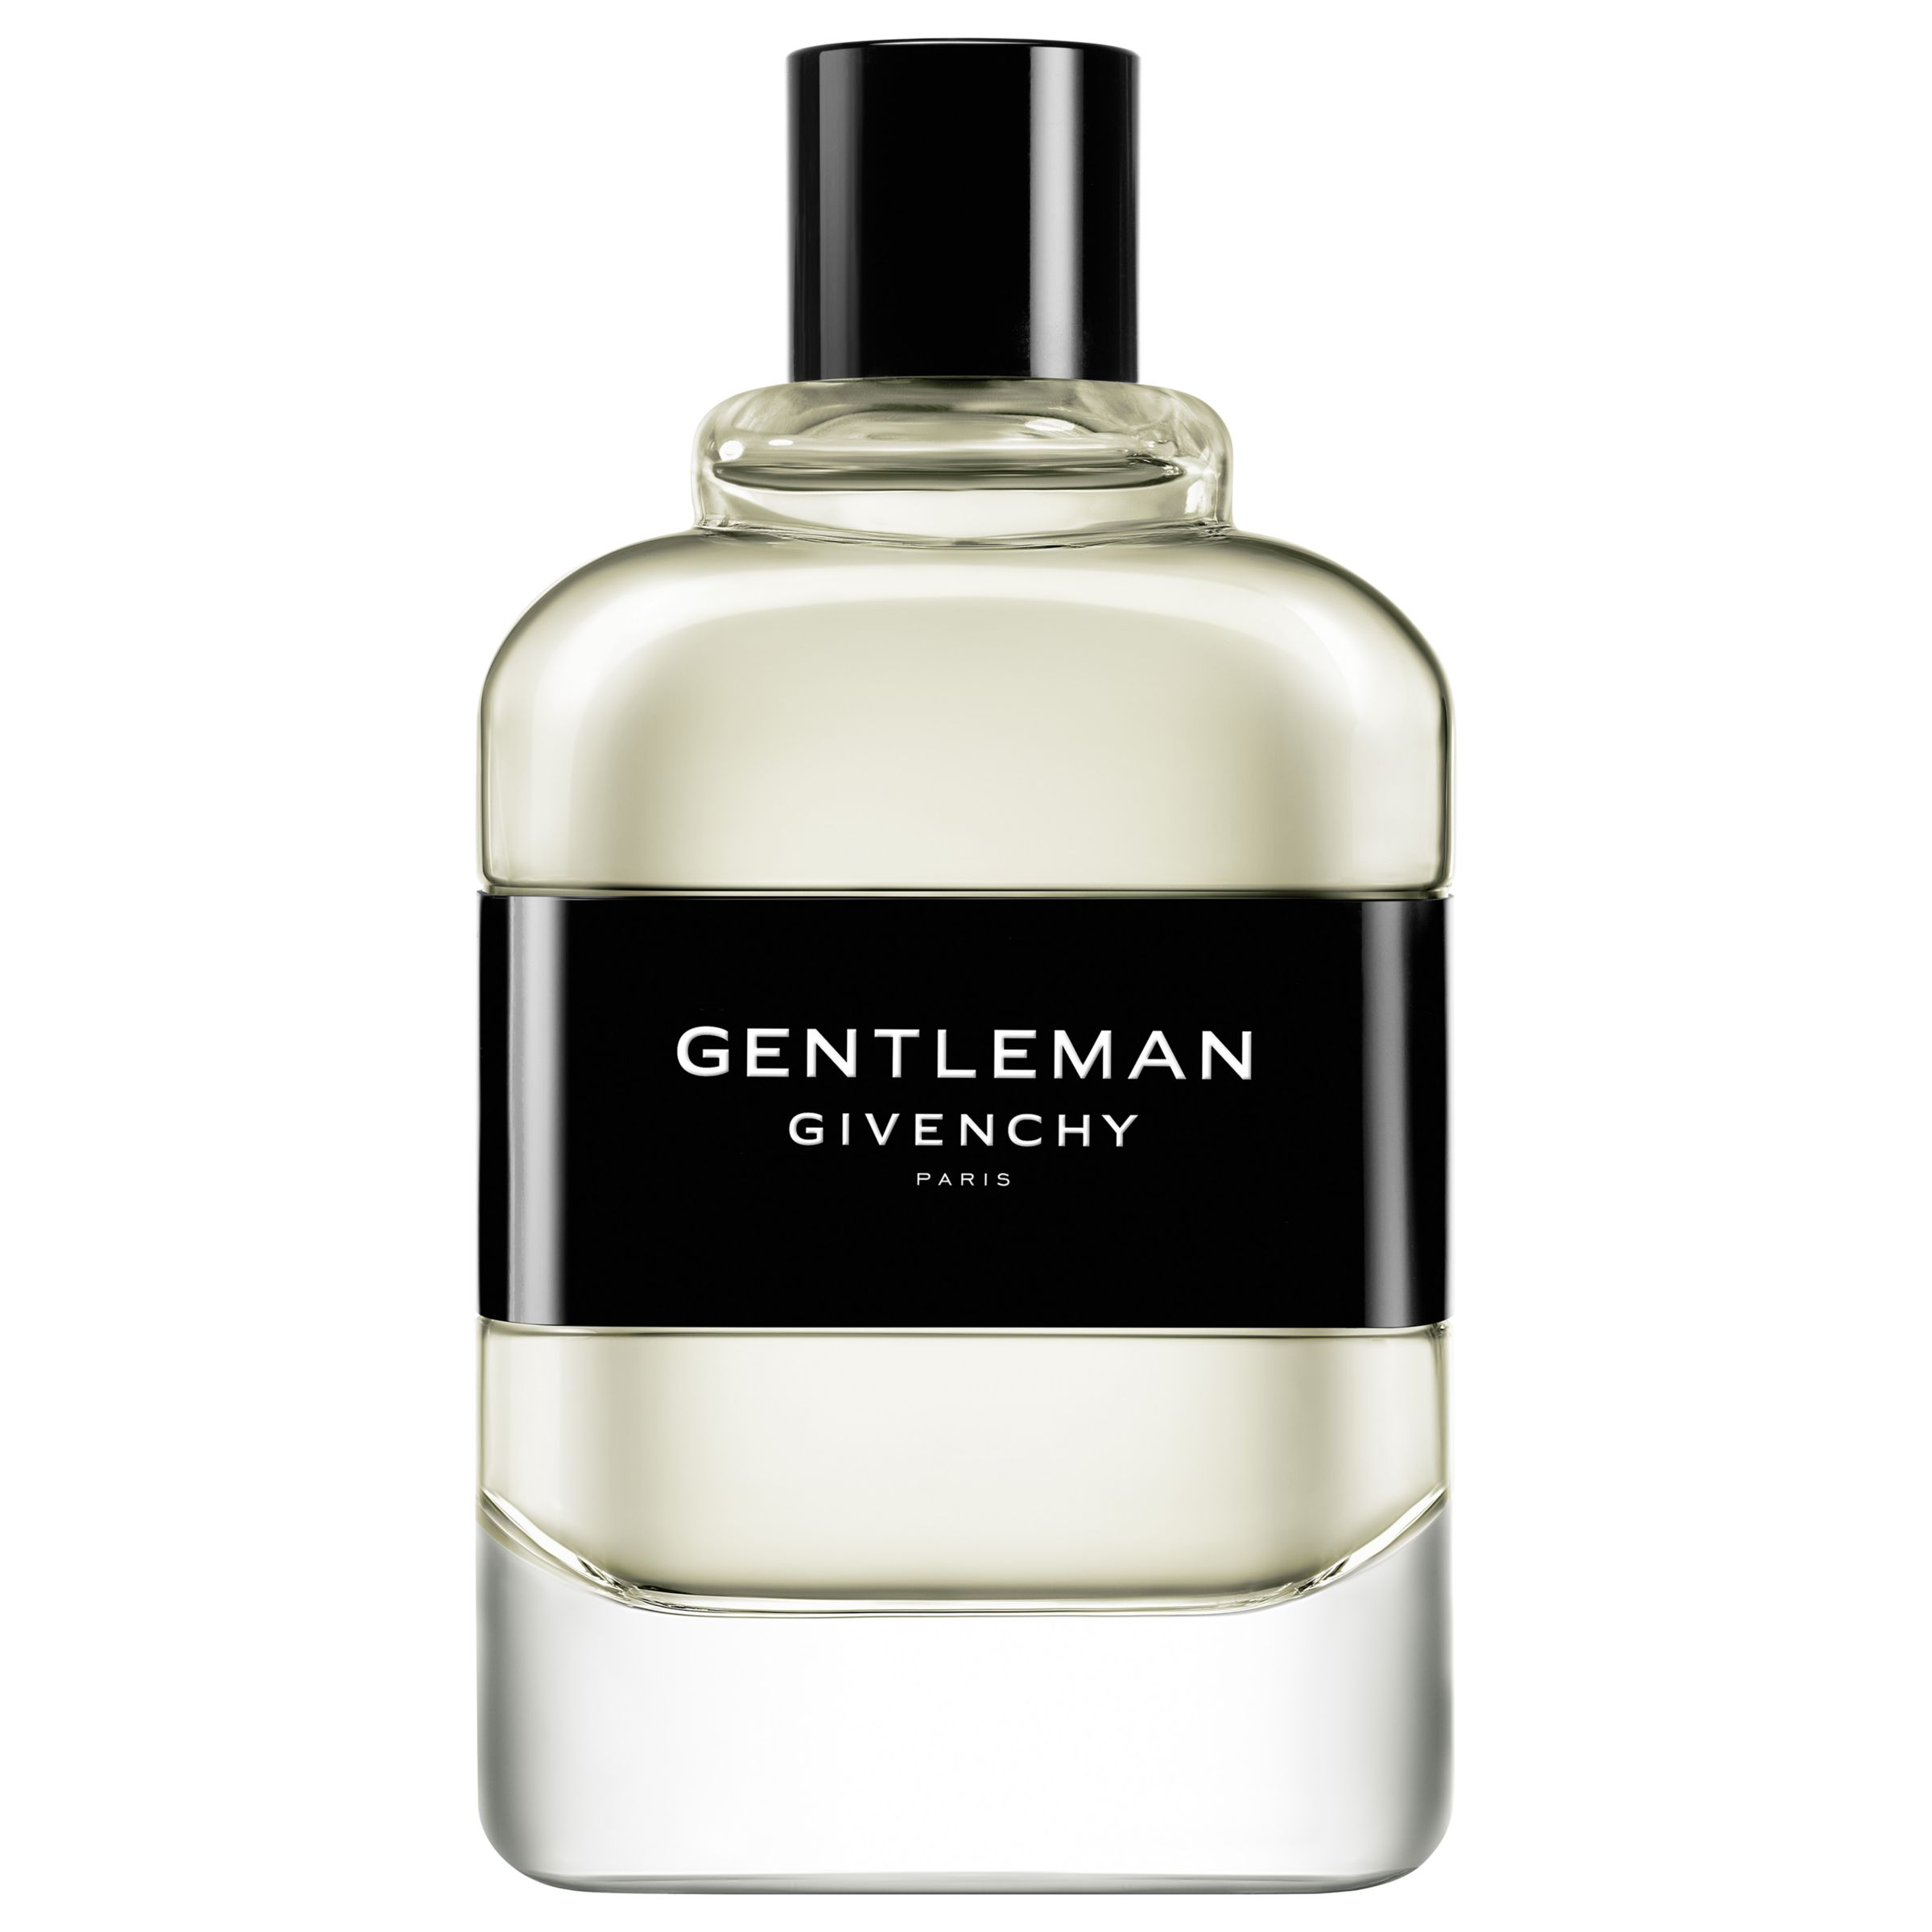 Givenchy Gentleman Eau de Toilette at 